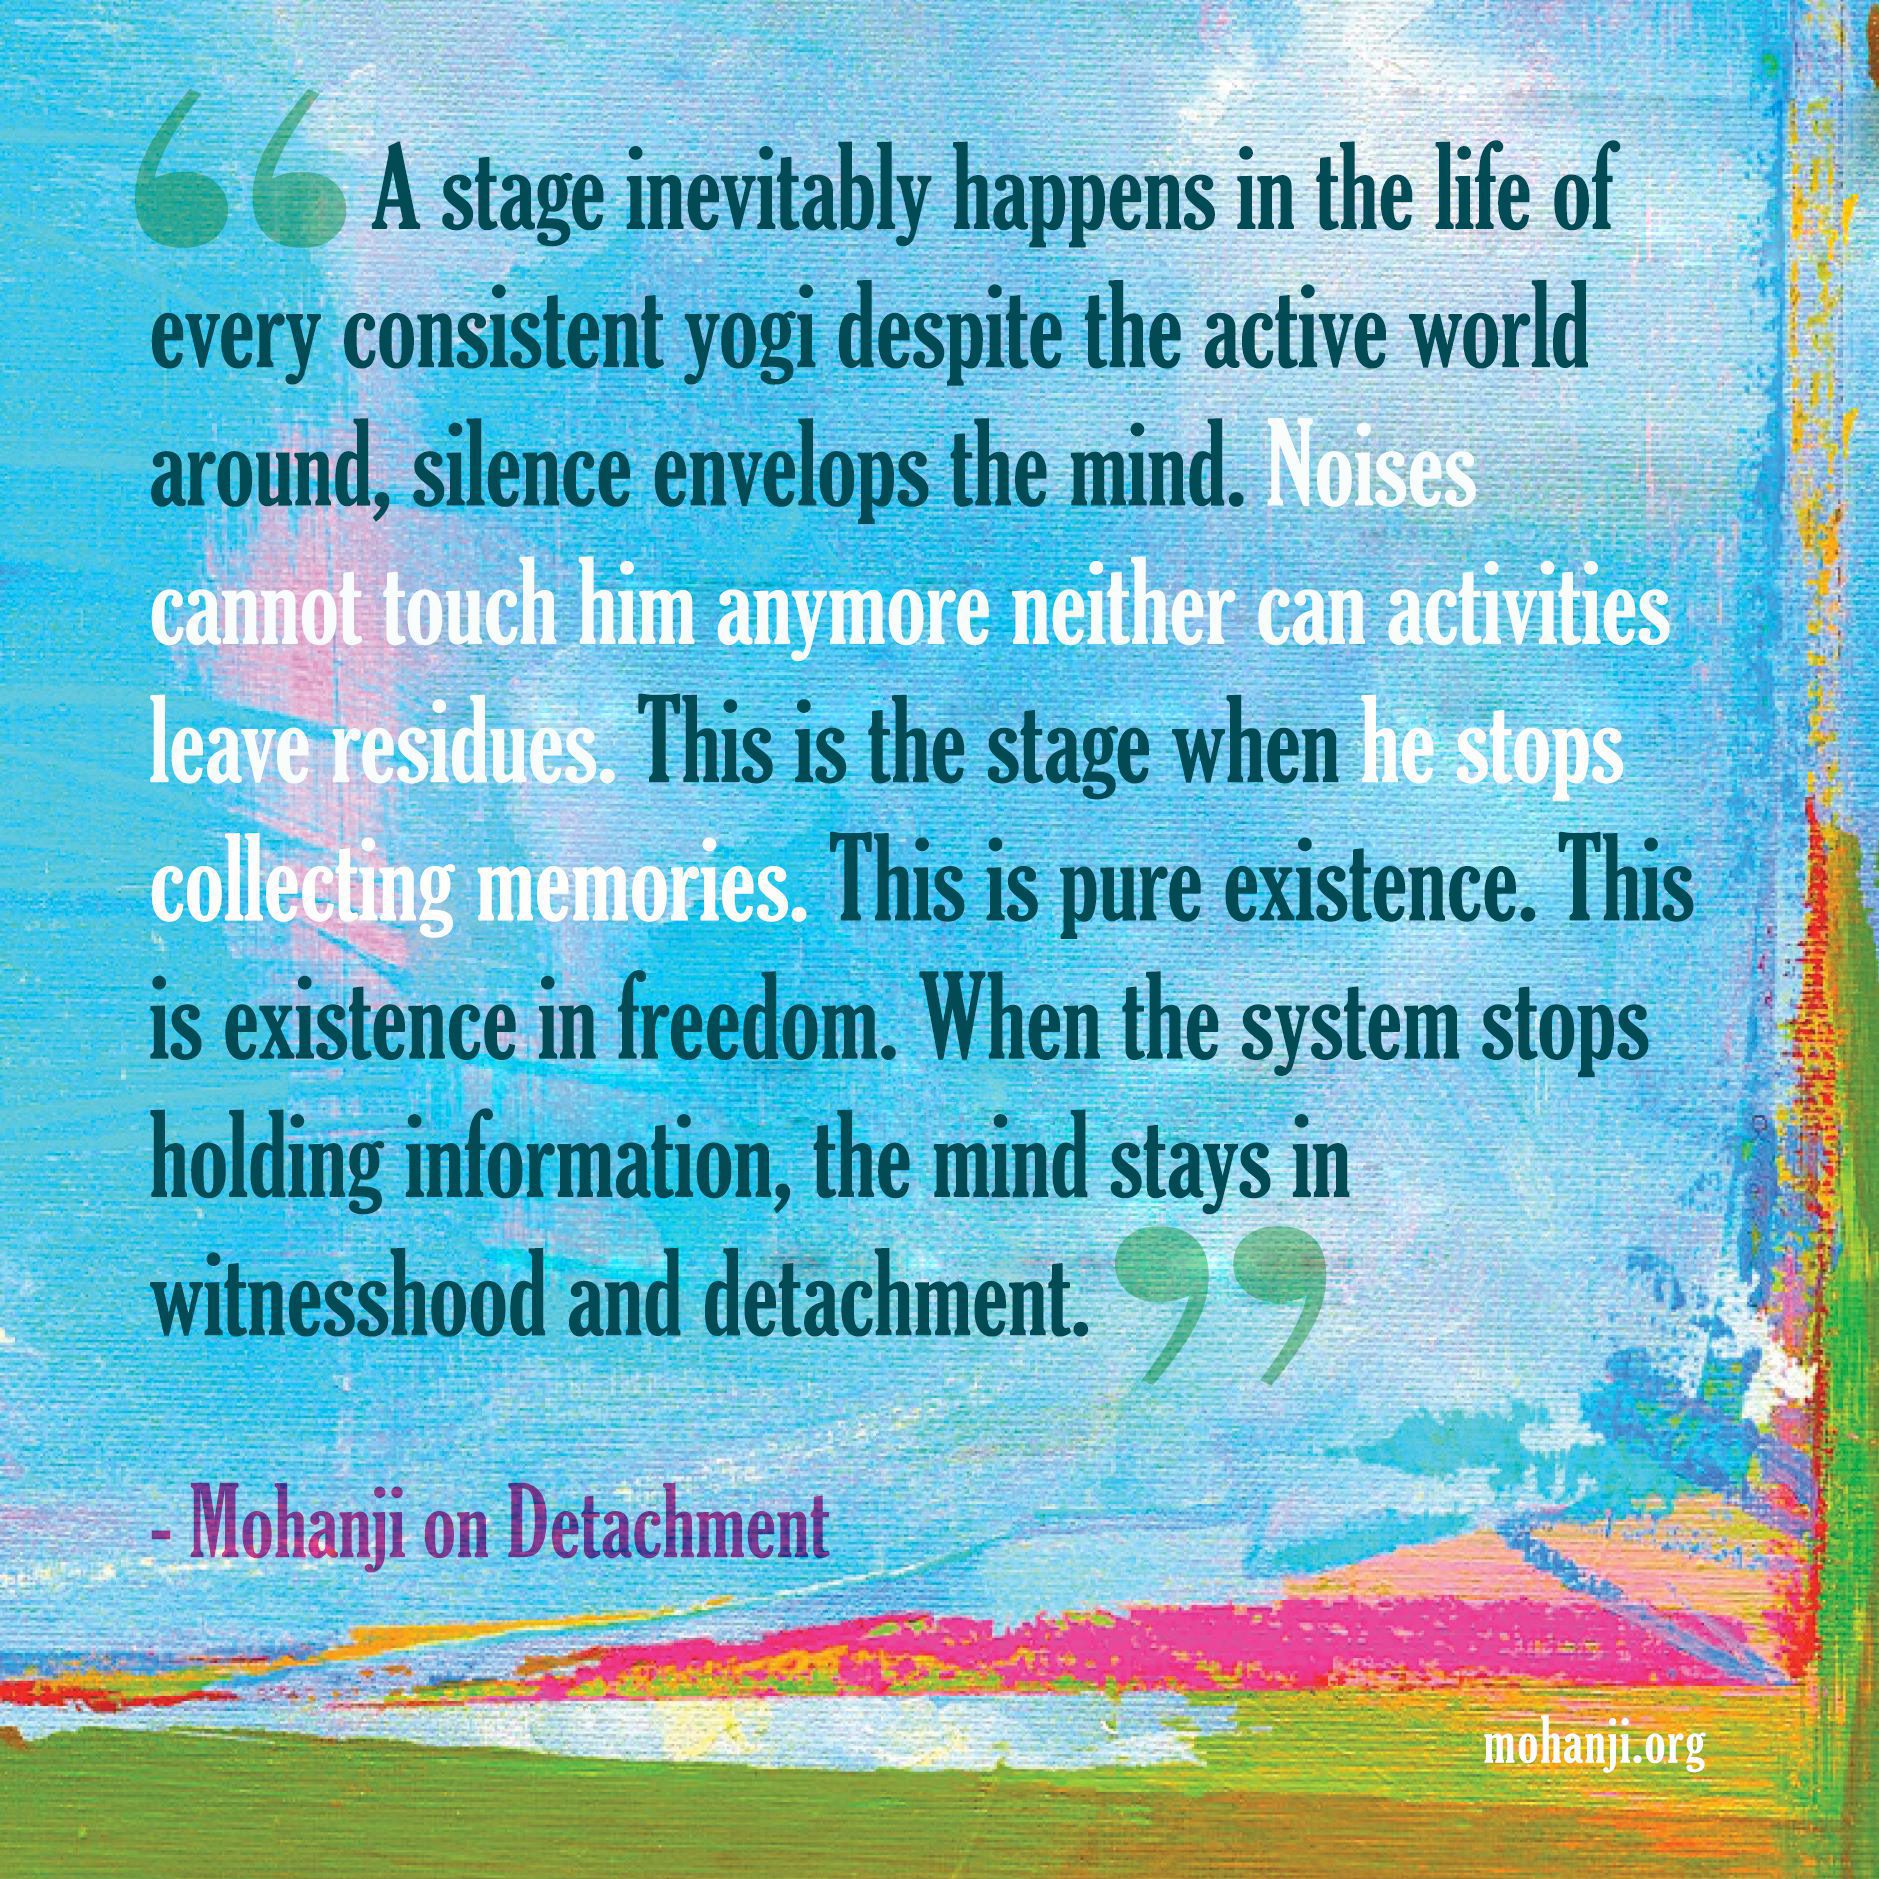 Mohanji quote - Detachment 2